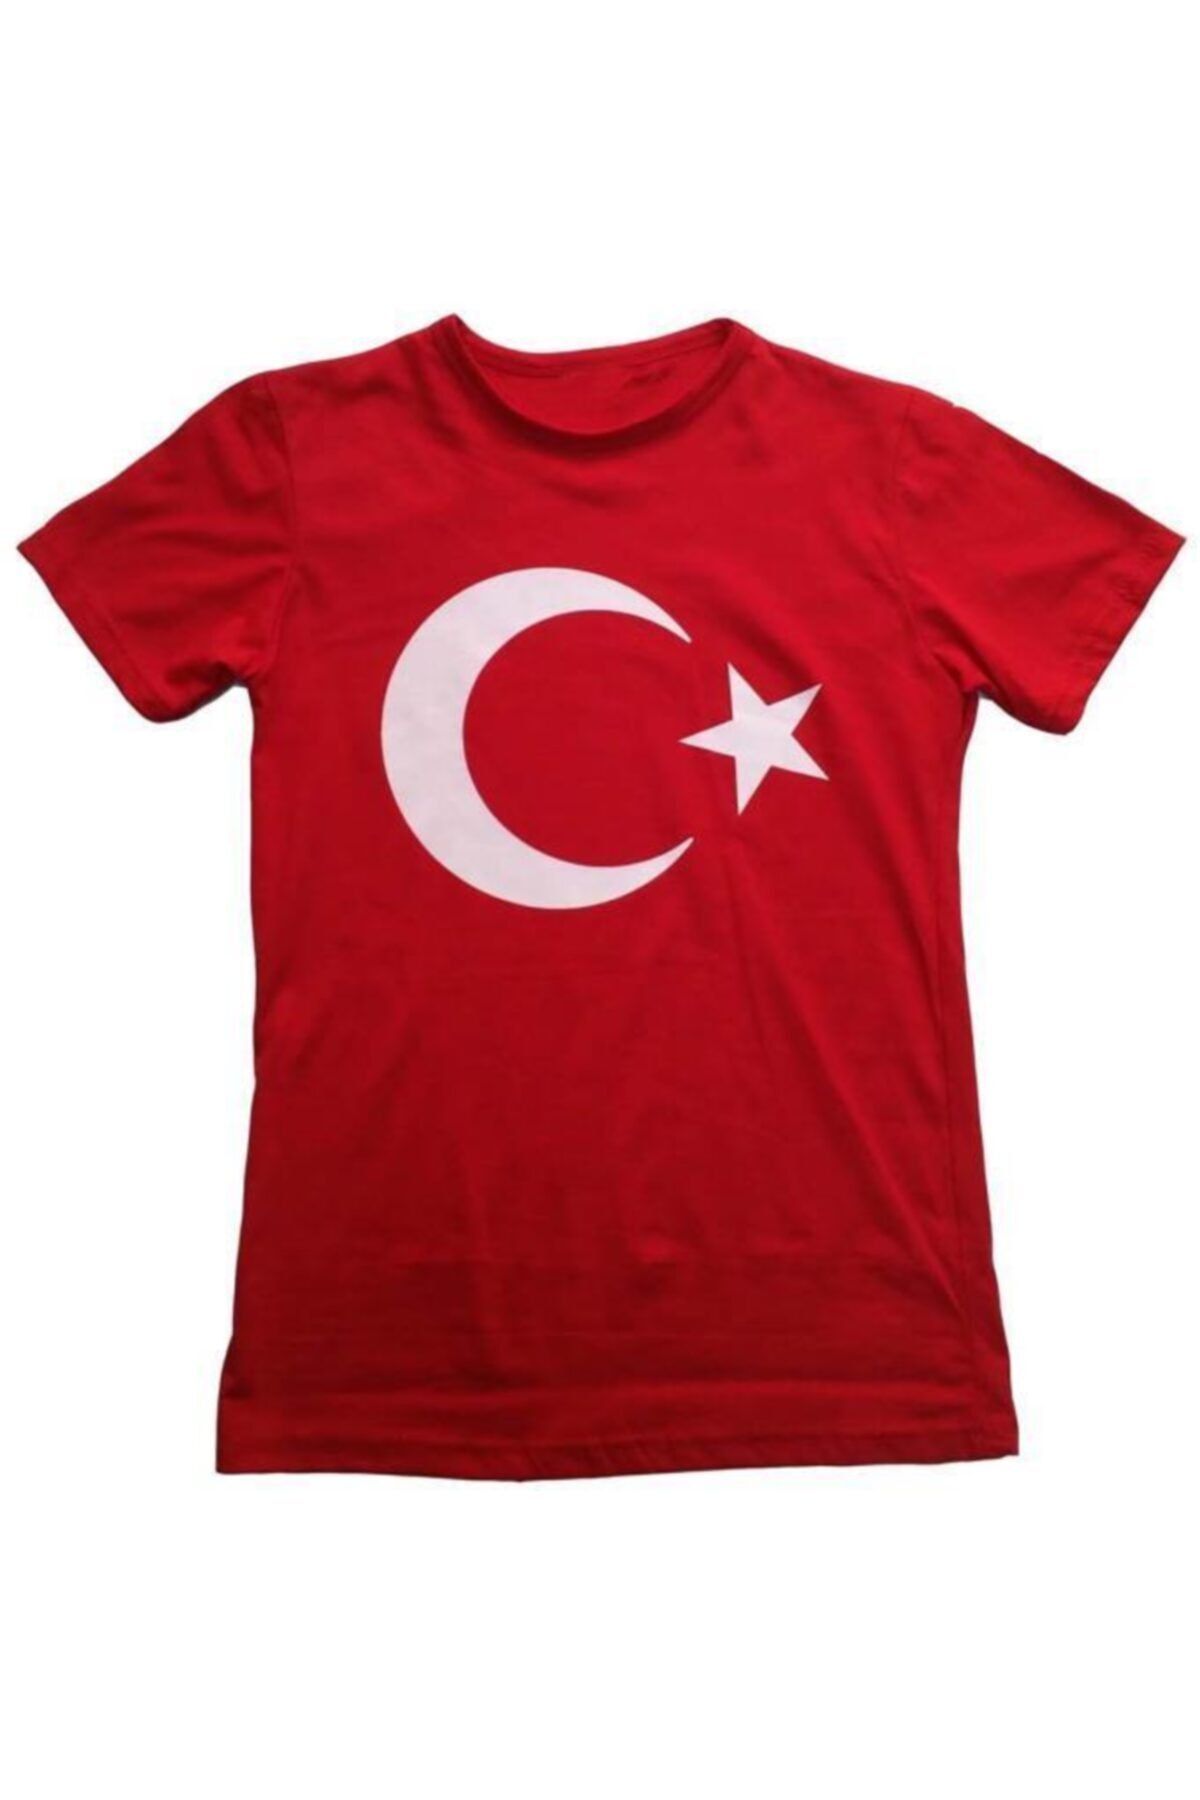 Liggo Türkiye Tişört Ay Yıldız Baskılı Tişört